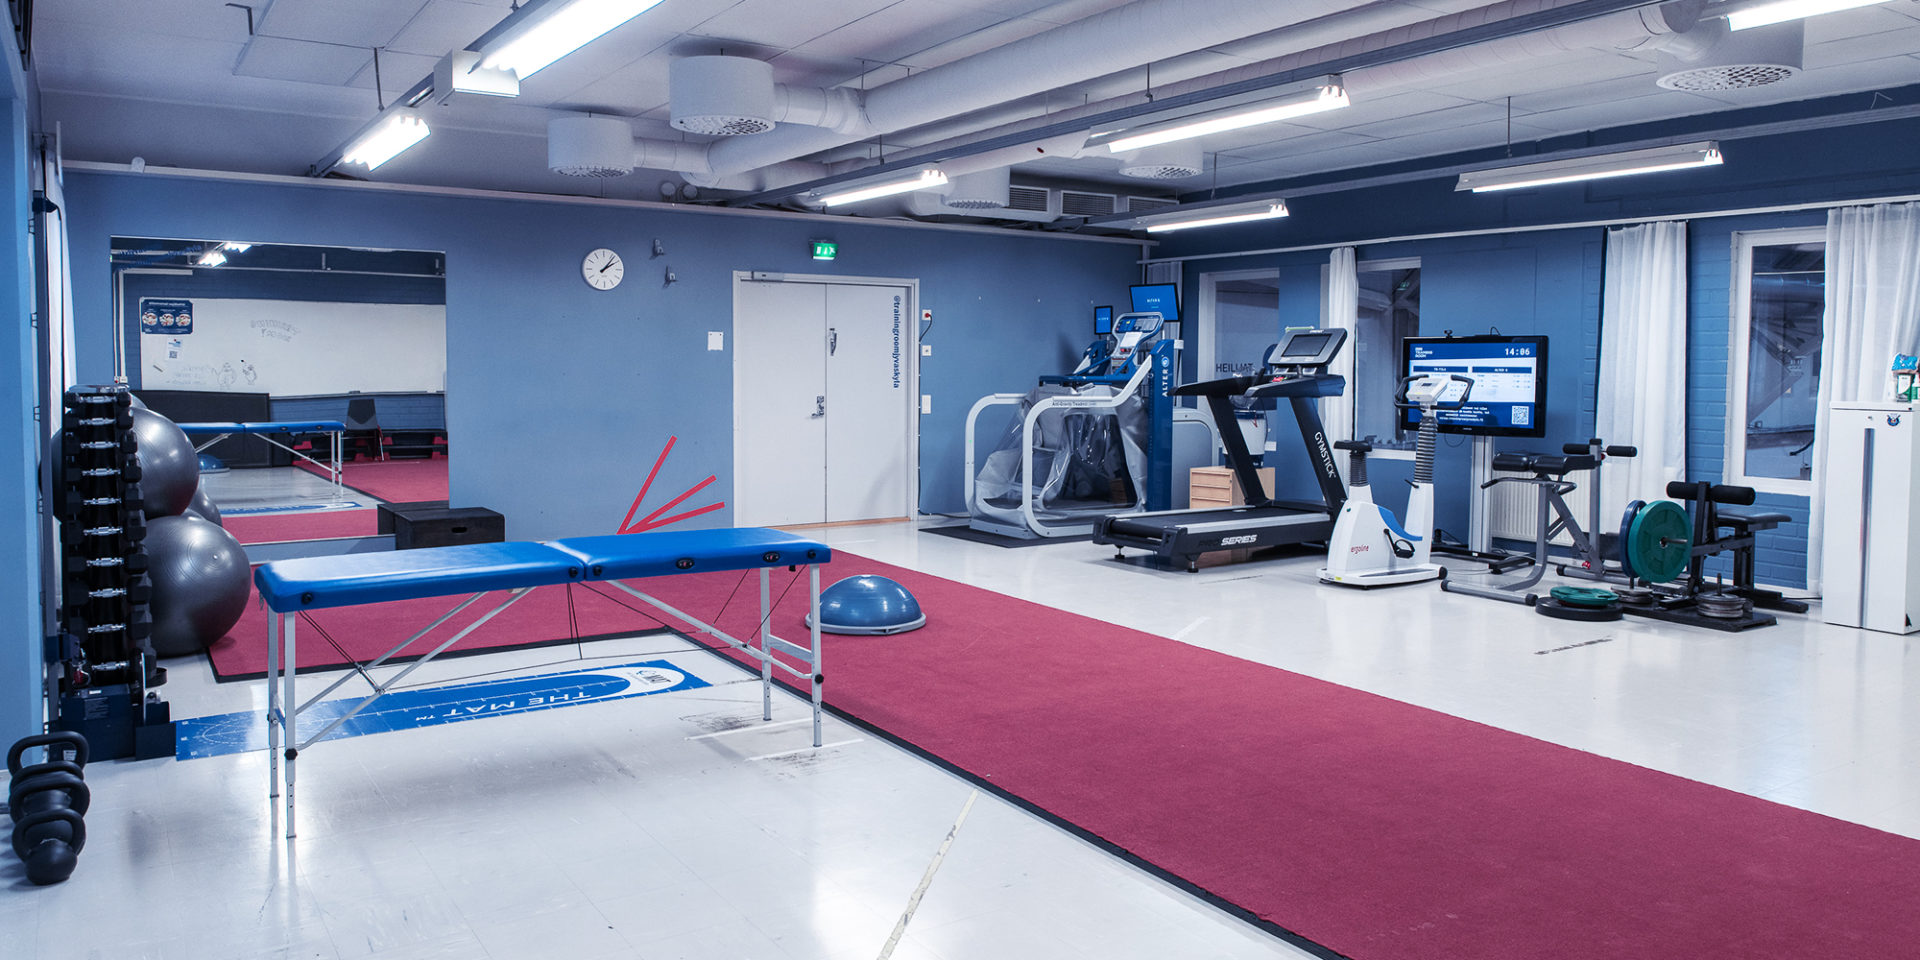 Kuva tyhjästä Training Roomista, jossa näkyy punainen pitkä jumppamatto, hierontapöytä, jumppapalloja, juoksumatto ja muita harjoituslaitteita.